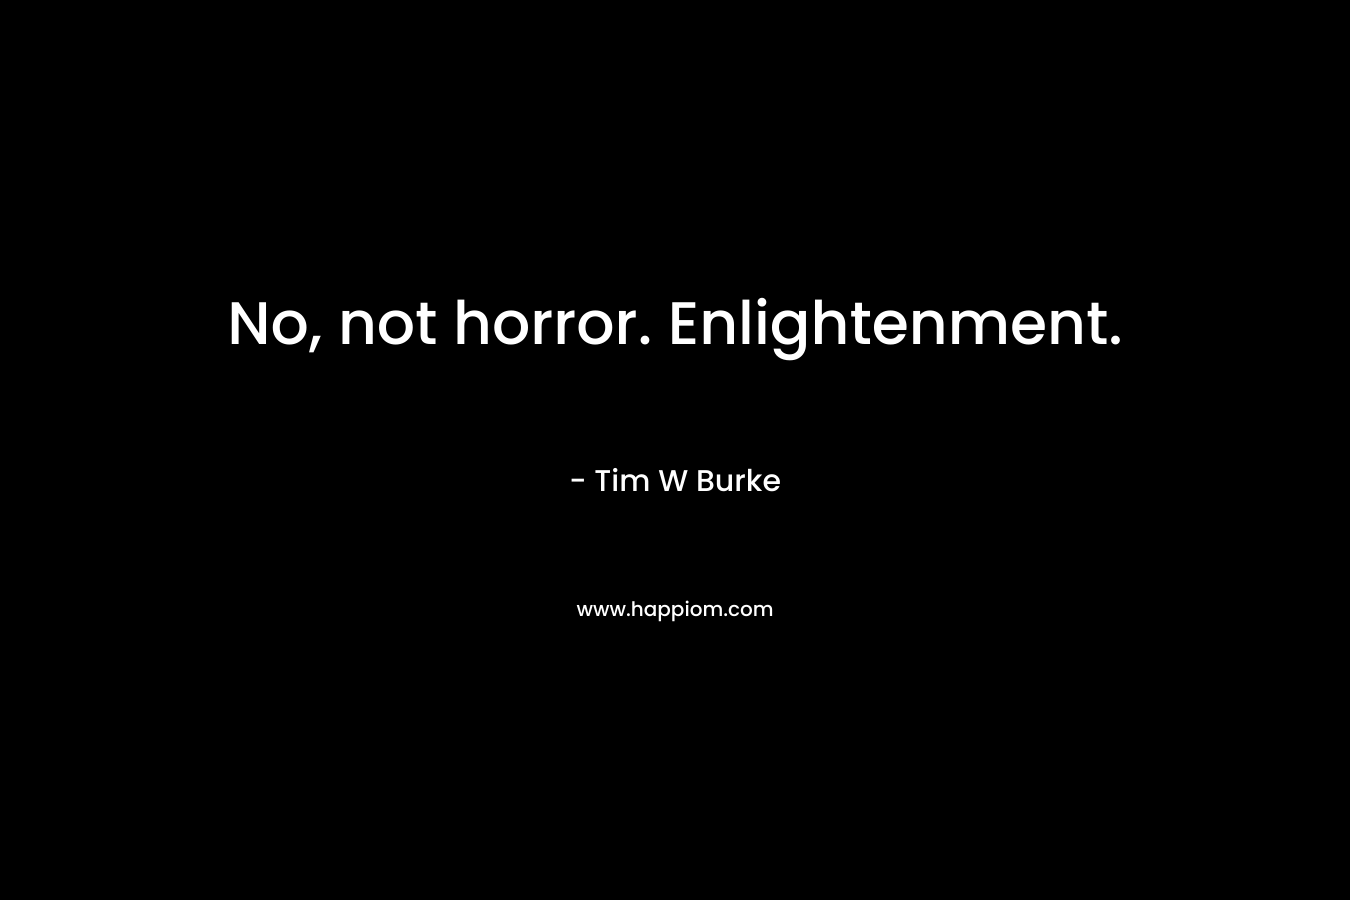 No, not horror. Enlightenment.